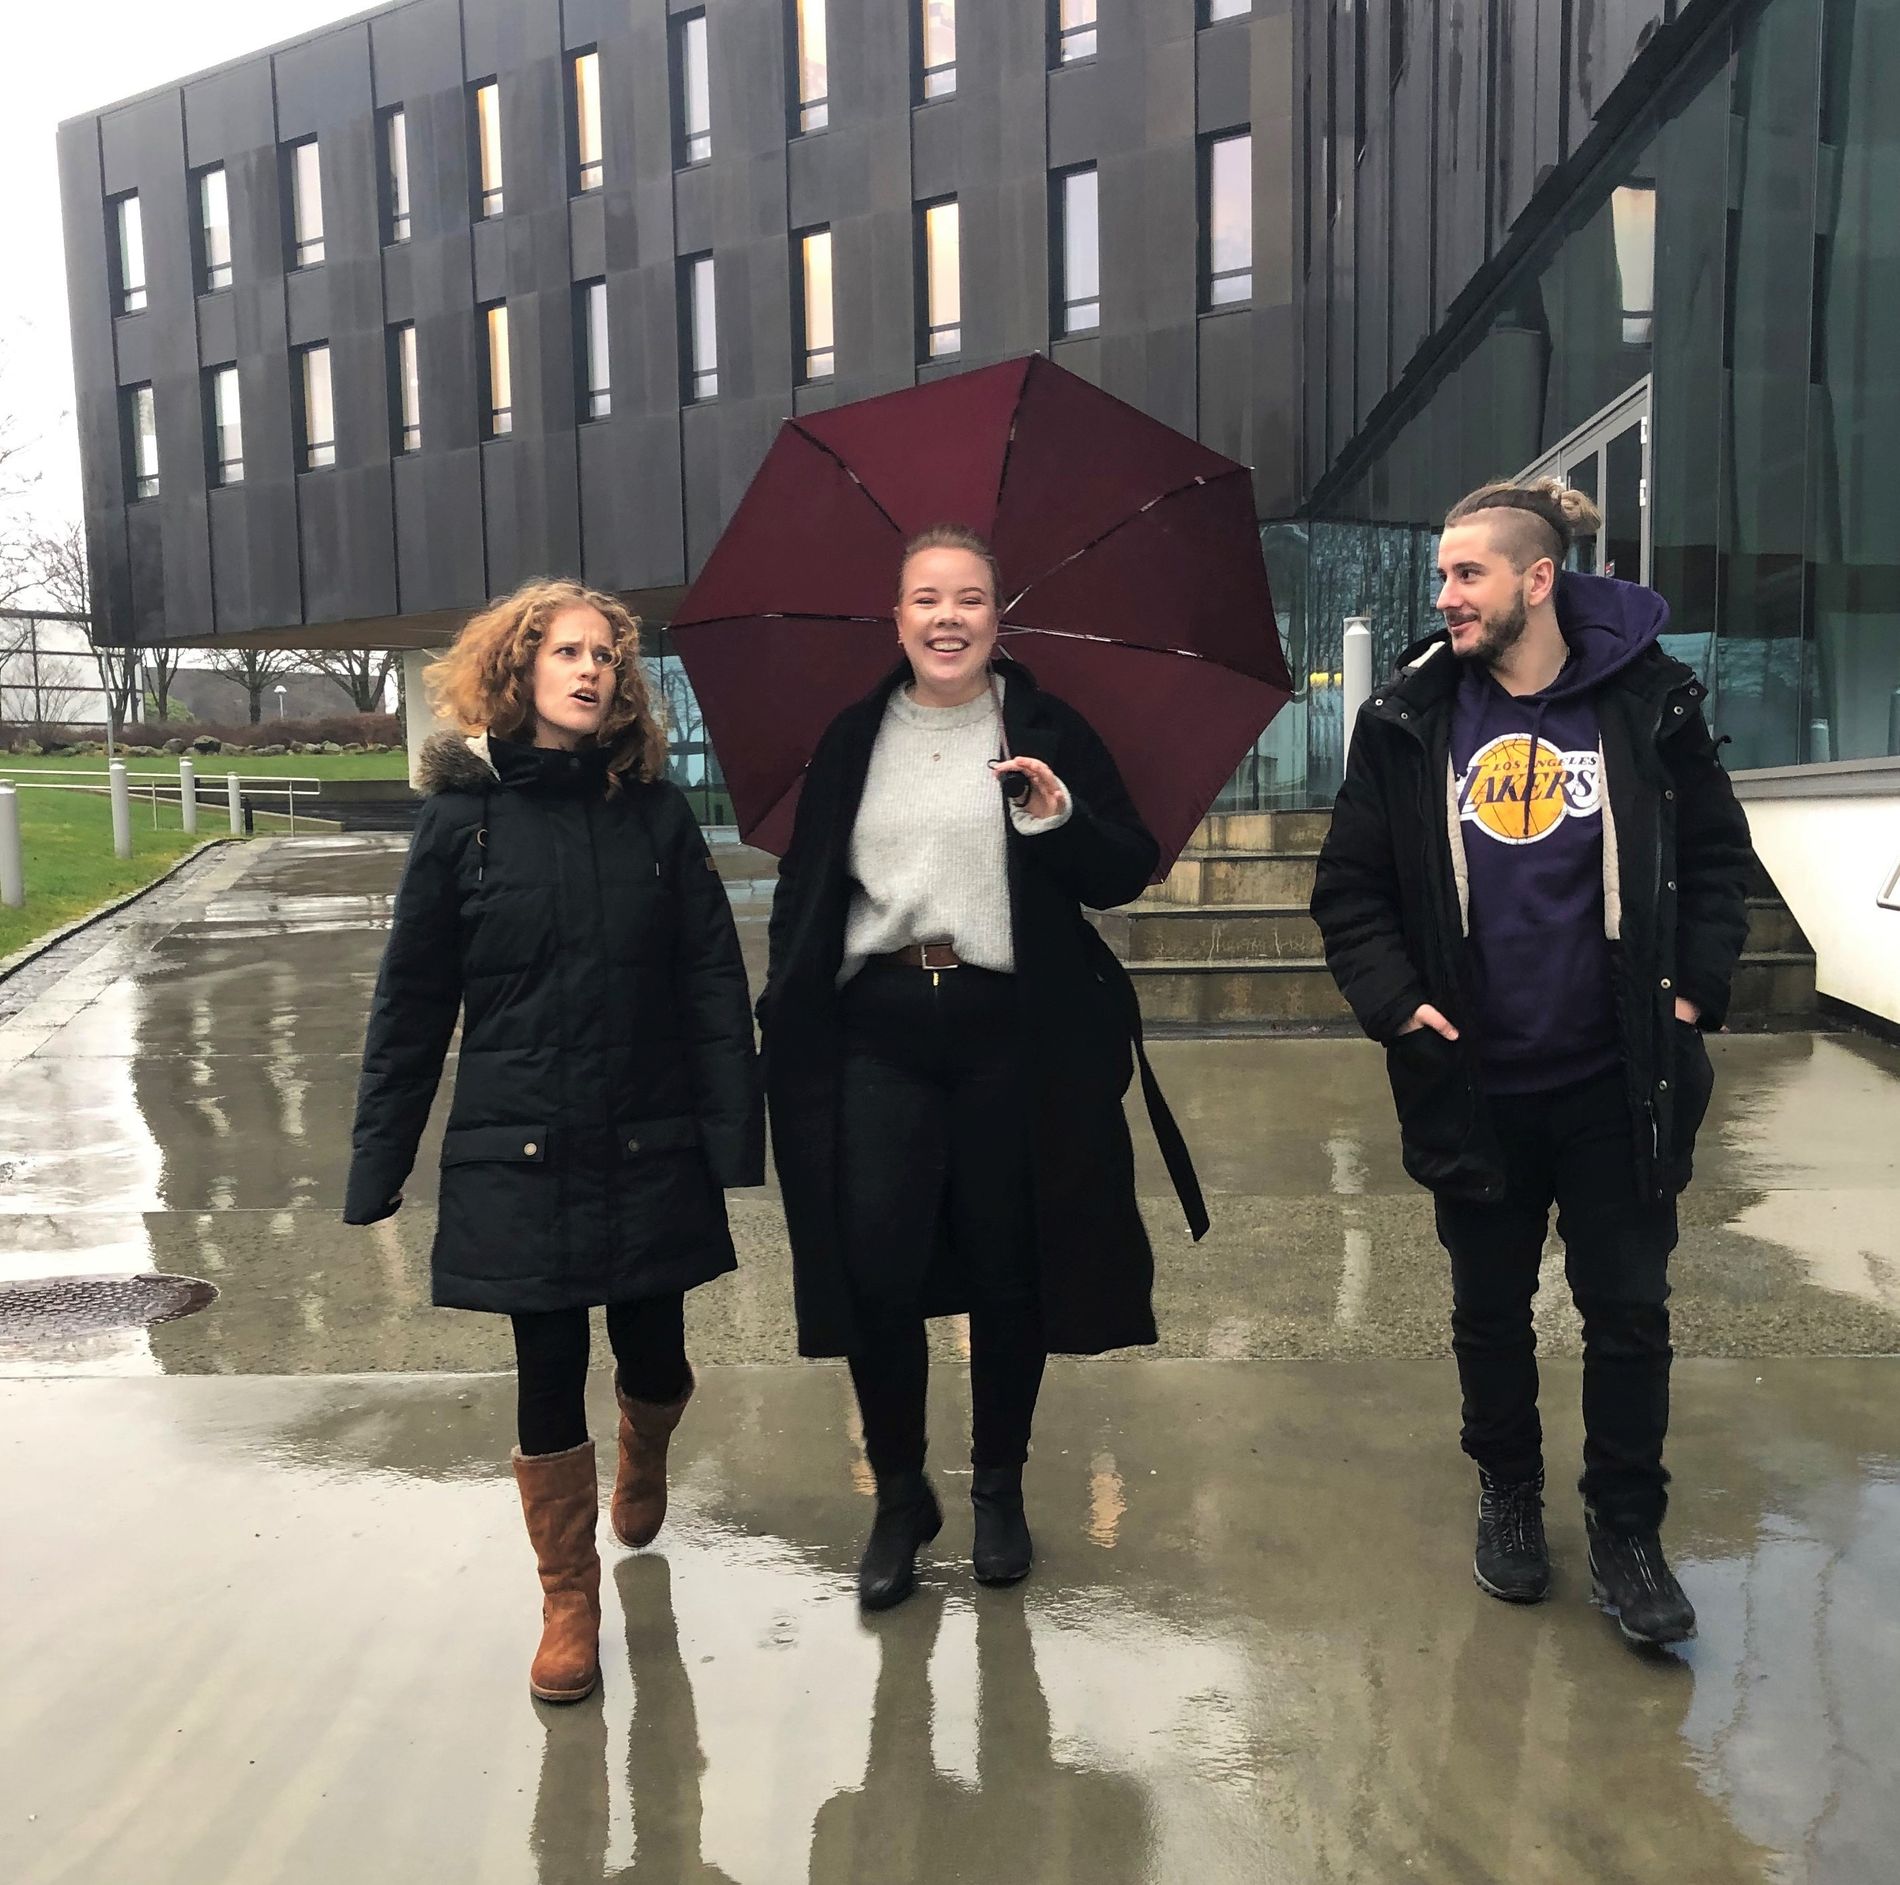 Fra venstre: Laura Reffier, Jenny Mathilde Dyrkorn og Nikola Lero lot ikke været legge en demper på humøret første skoledag. Dyrkorn viste at hun har erfaring med vestlandsvær, da hun var eneste med paraply.